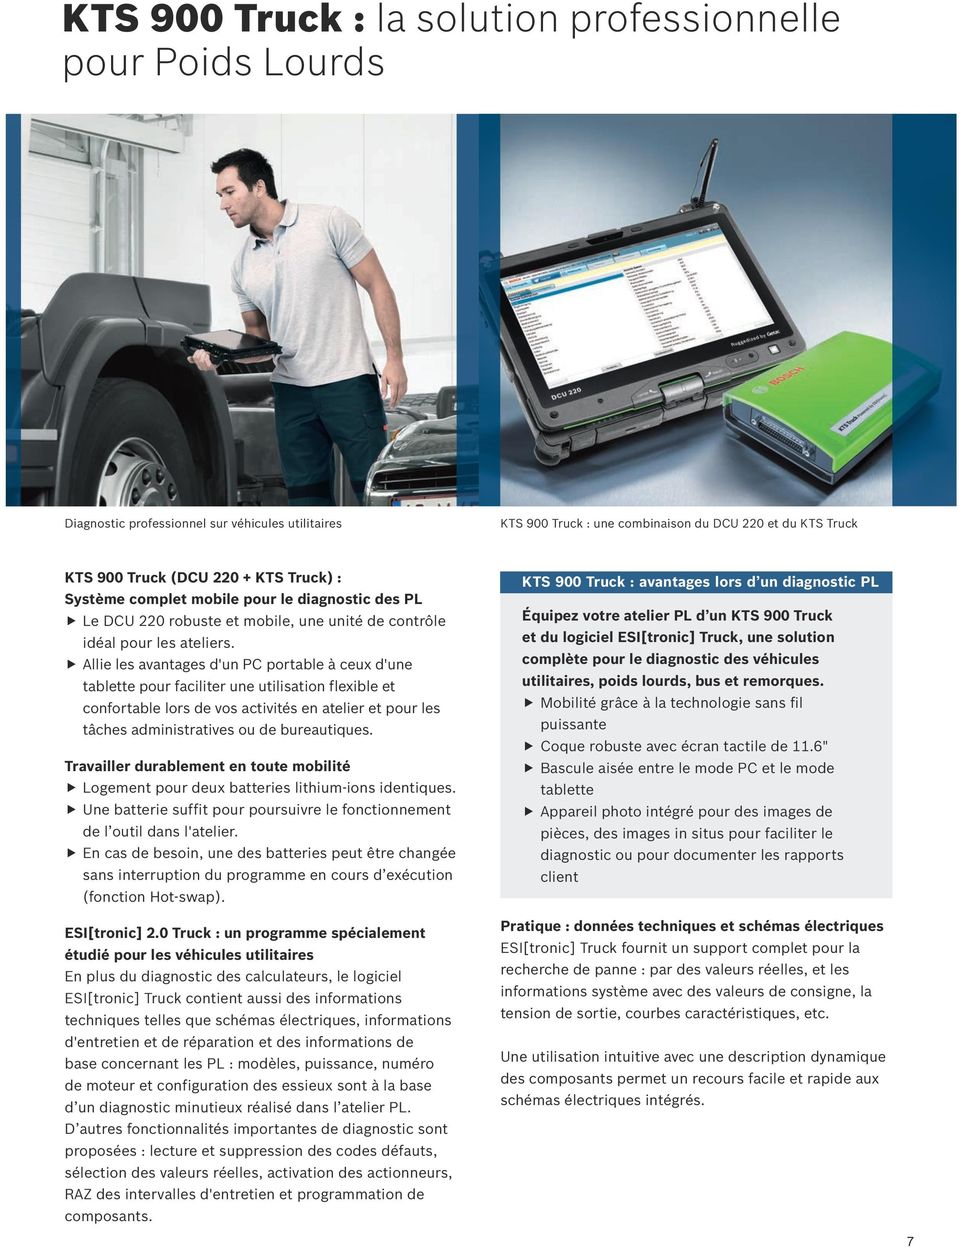 Allie les avantages d'un PC portable à ceux d'une tablette pour faciliter une utilisation flexible et confortable lors de vos activités en atelier et pour les tâches administratives ou de